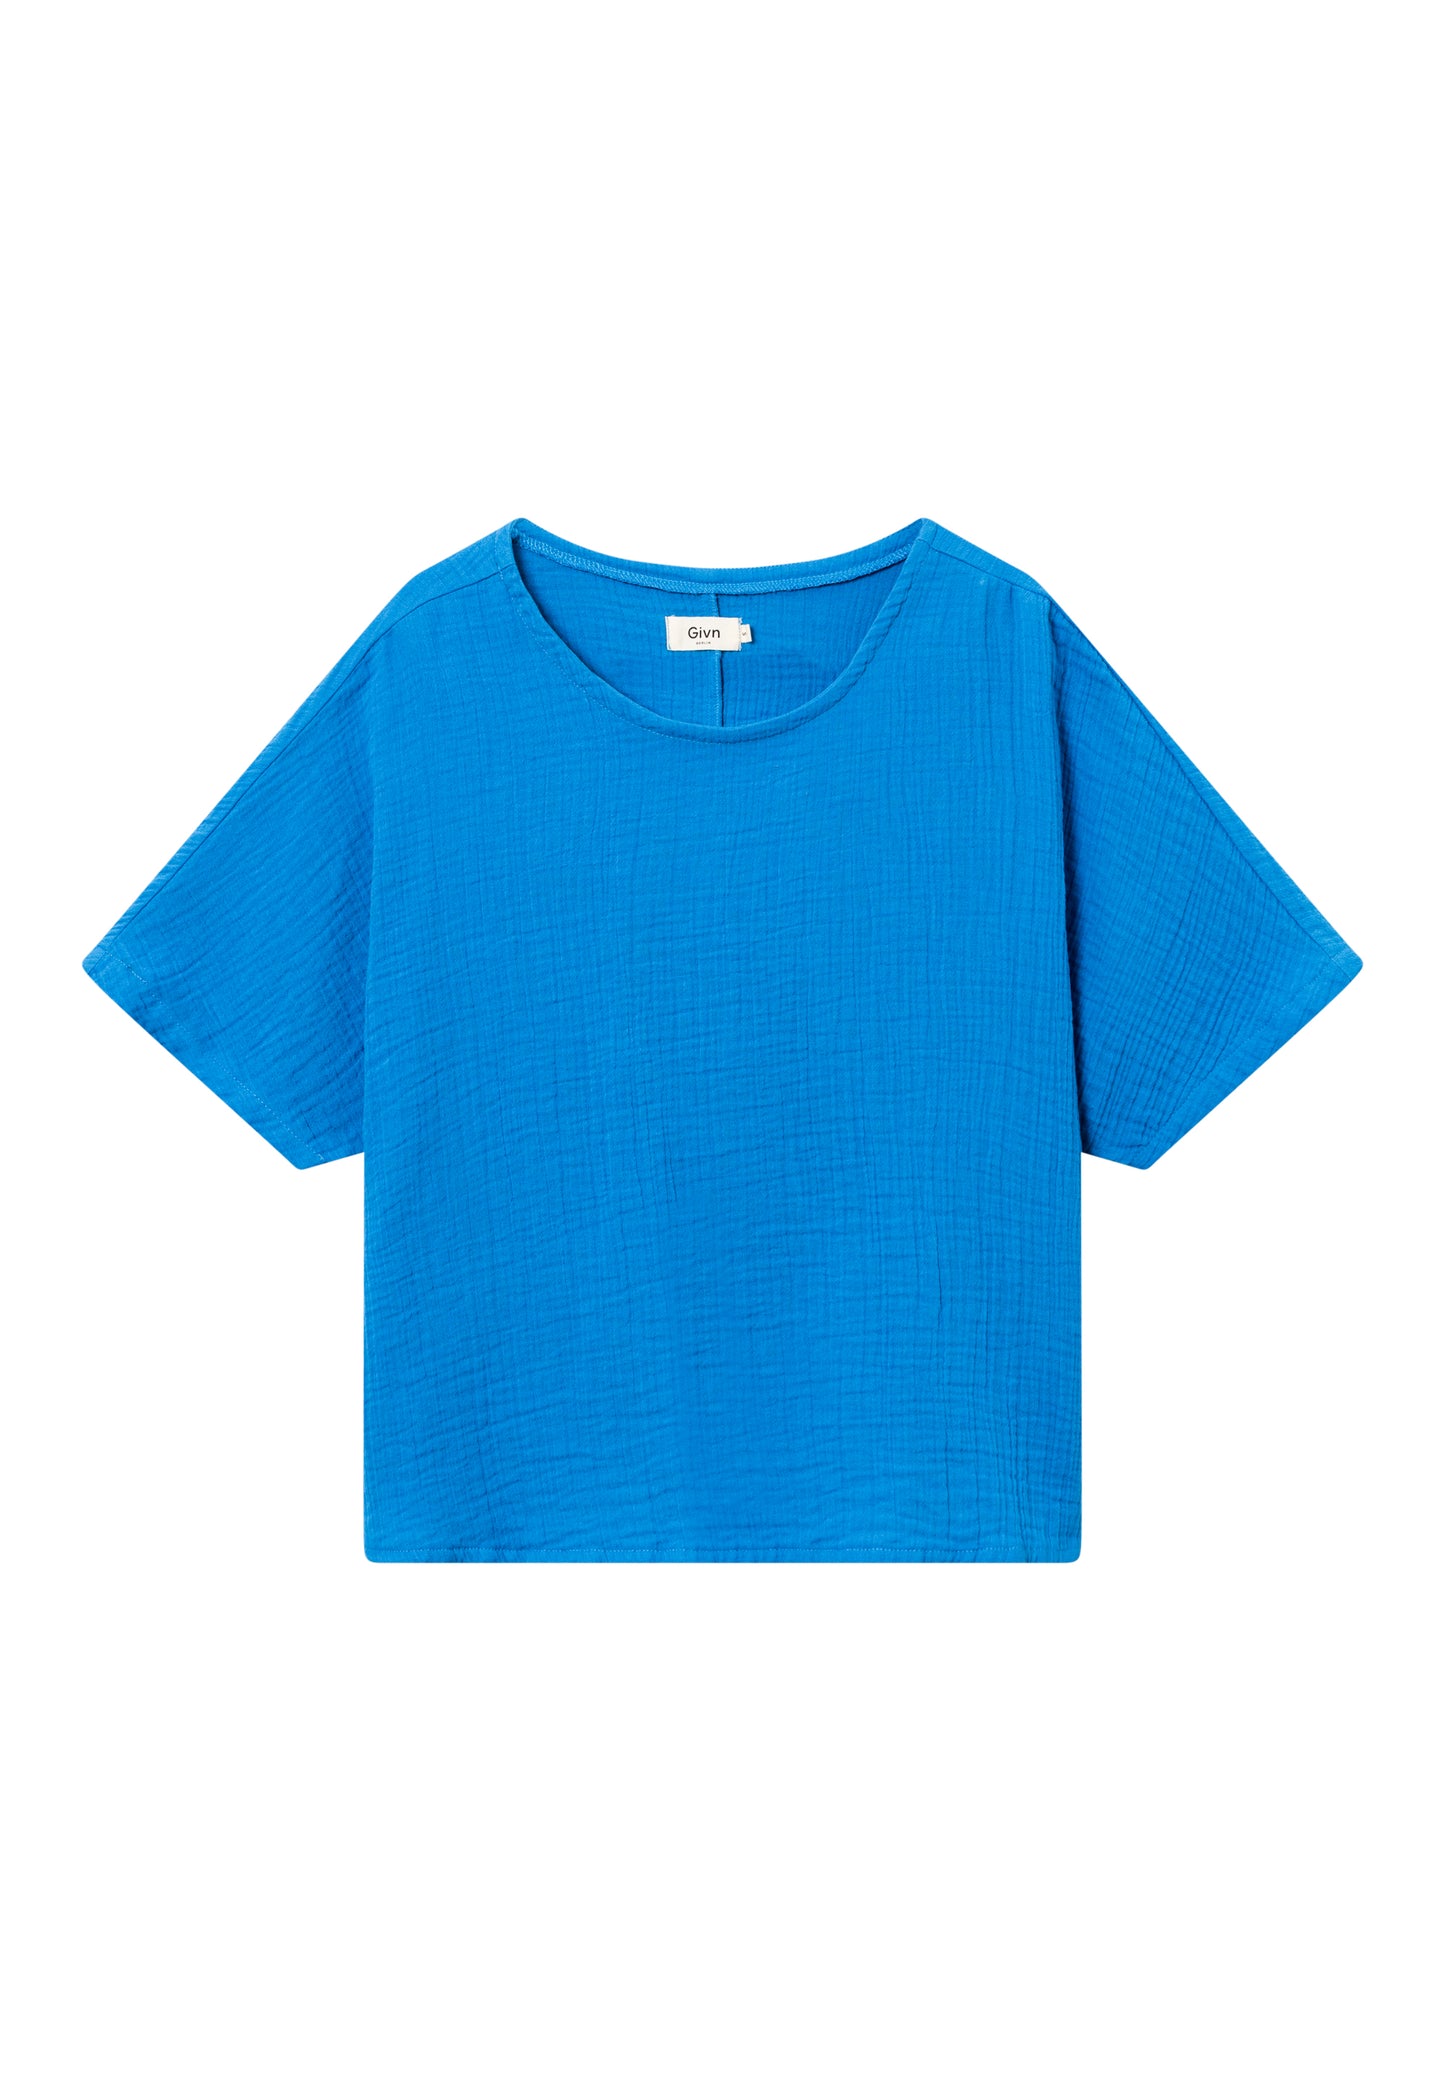 gbpina t-shirt, french blue (musselin), damen - givn